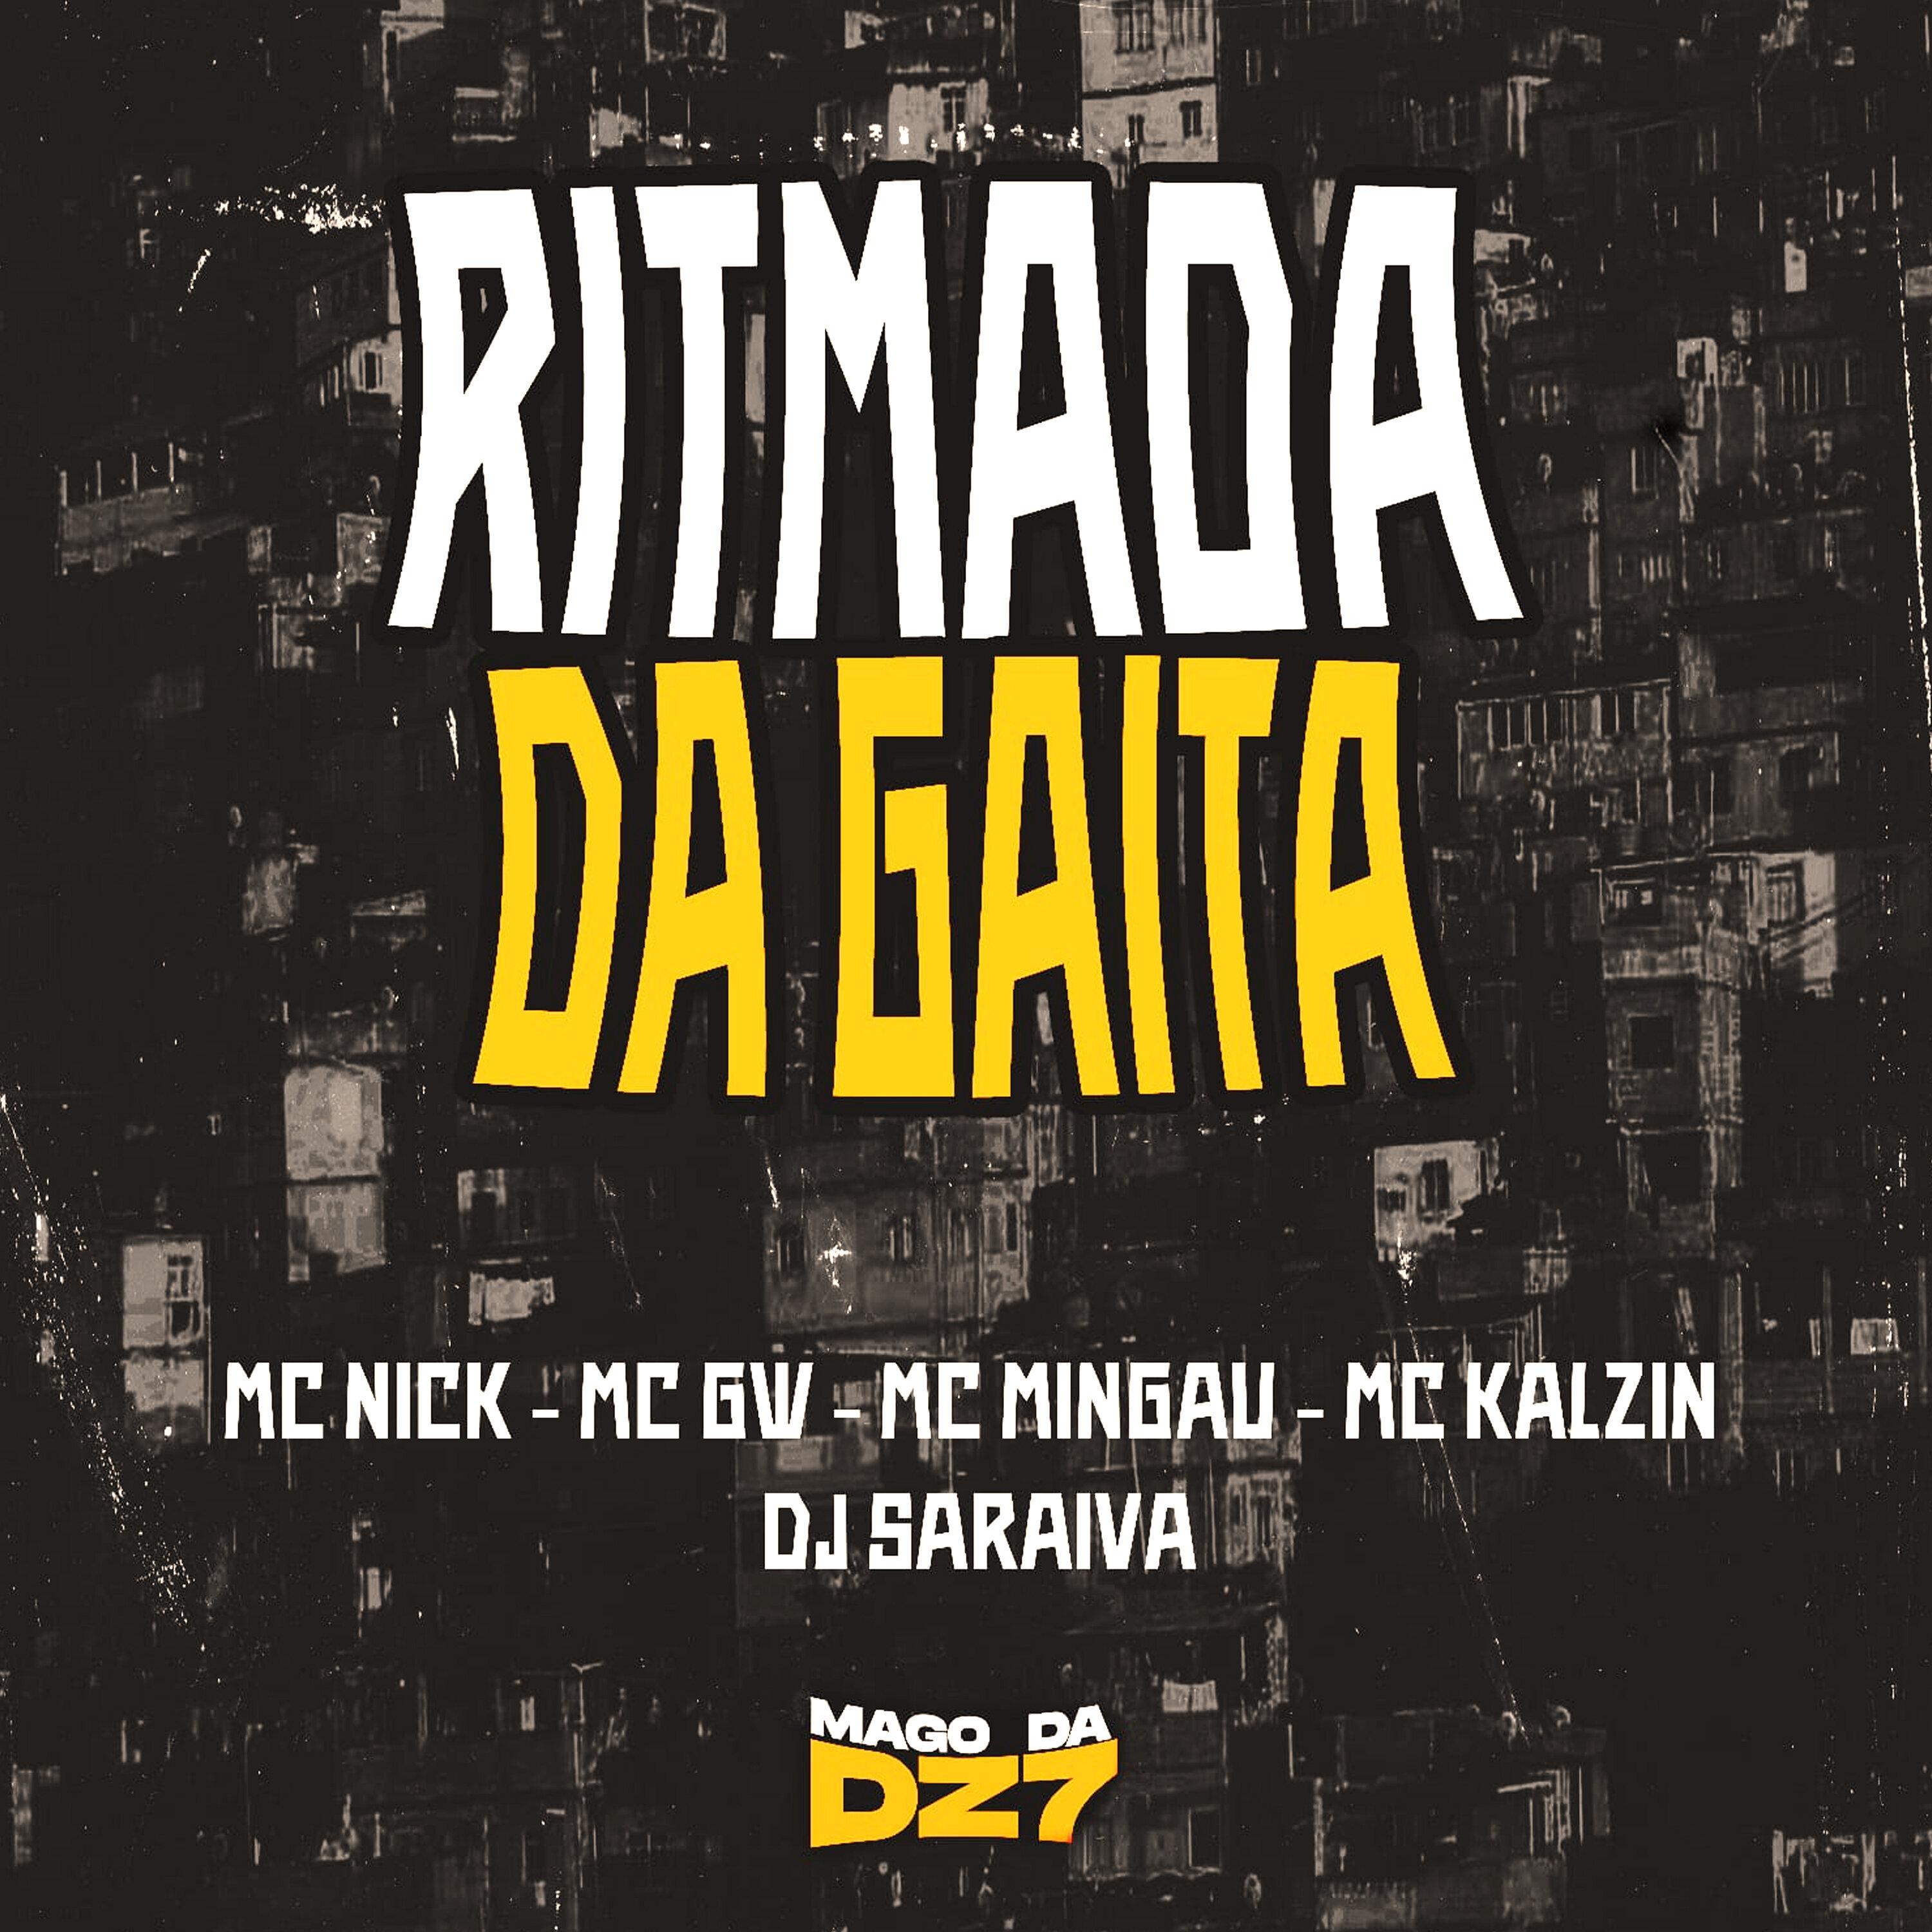 DJ SARAIVA - Ritmada da Gaita (feat. MC Kalzin & Mc Gw)